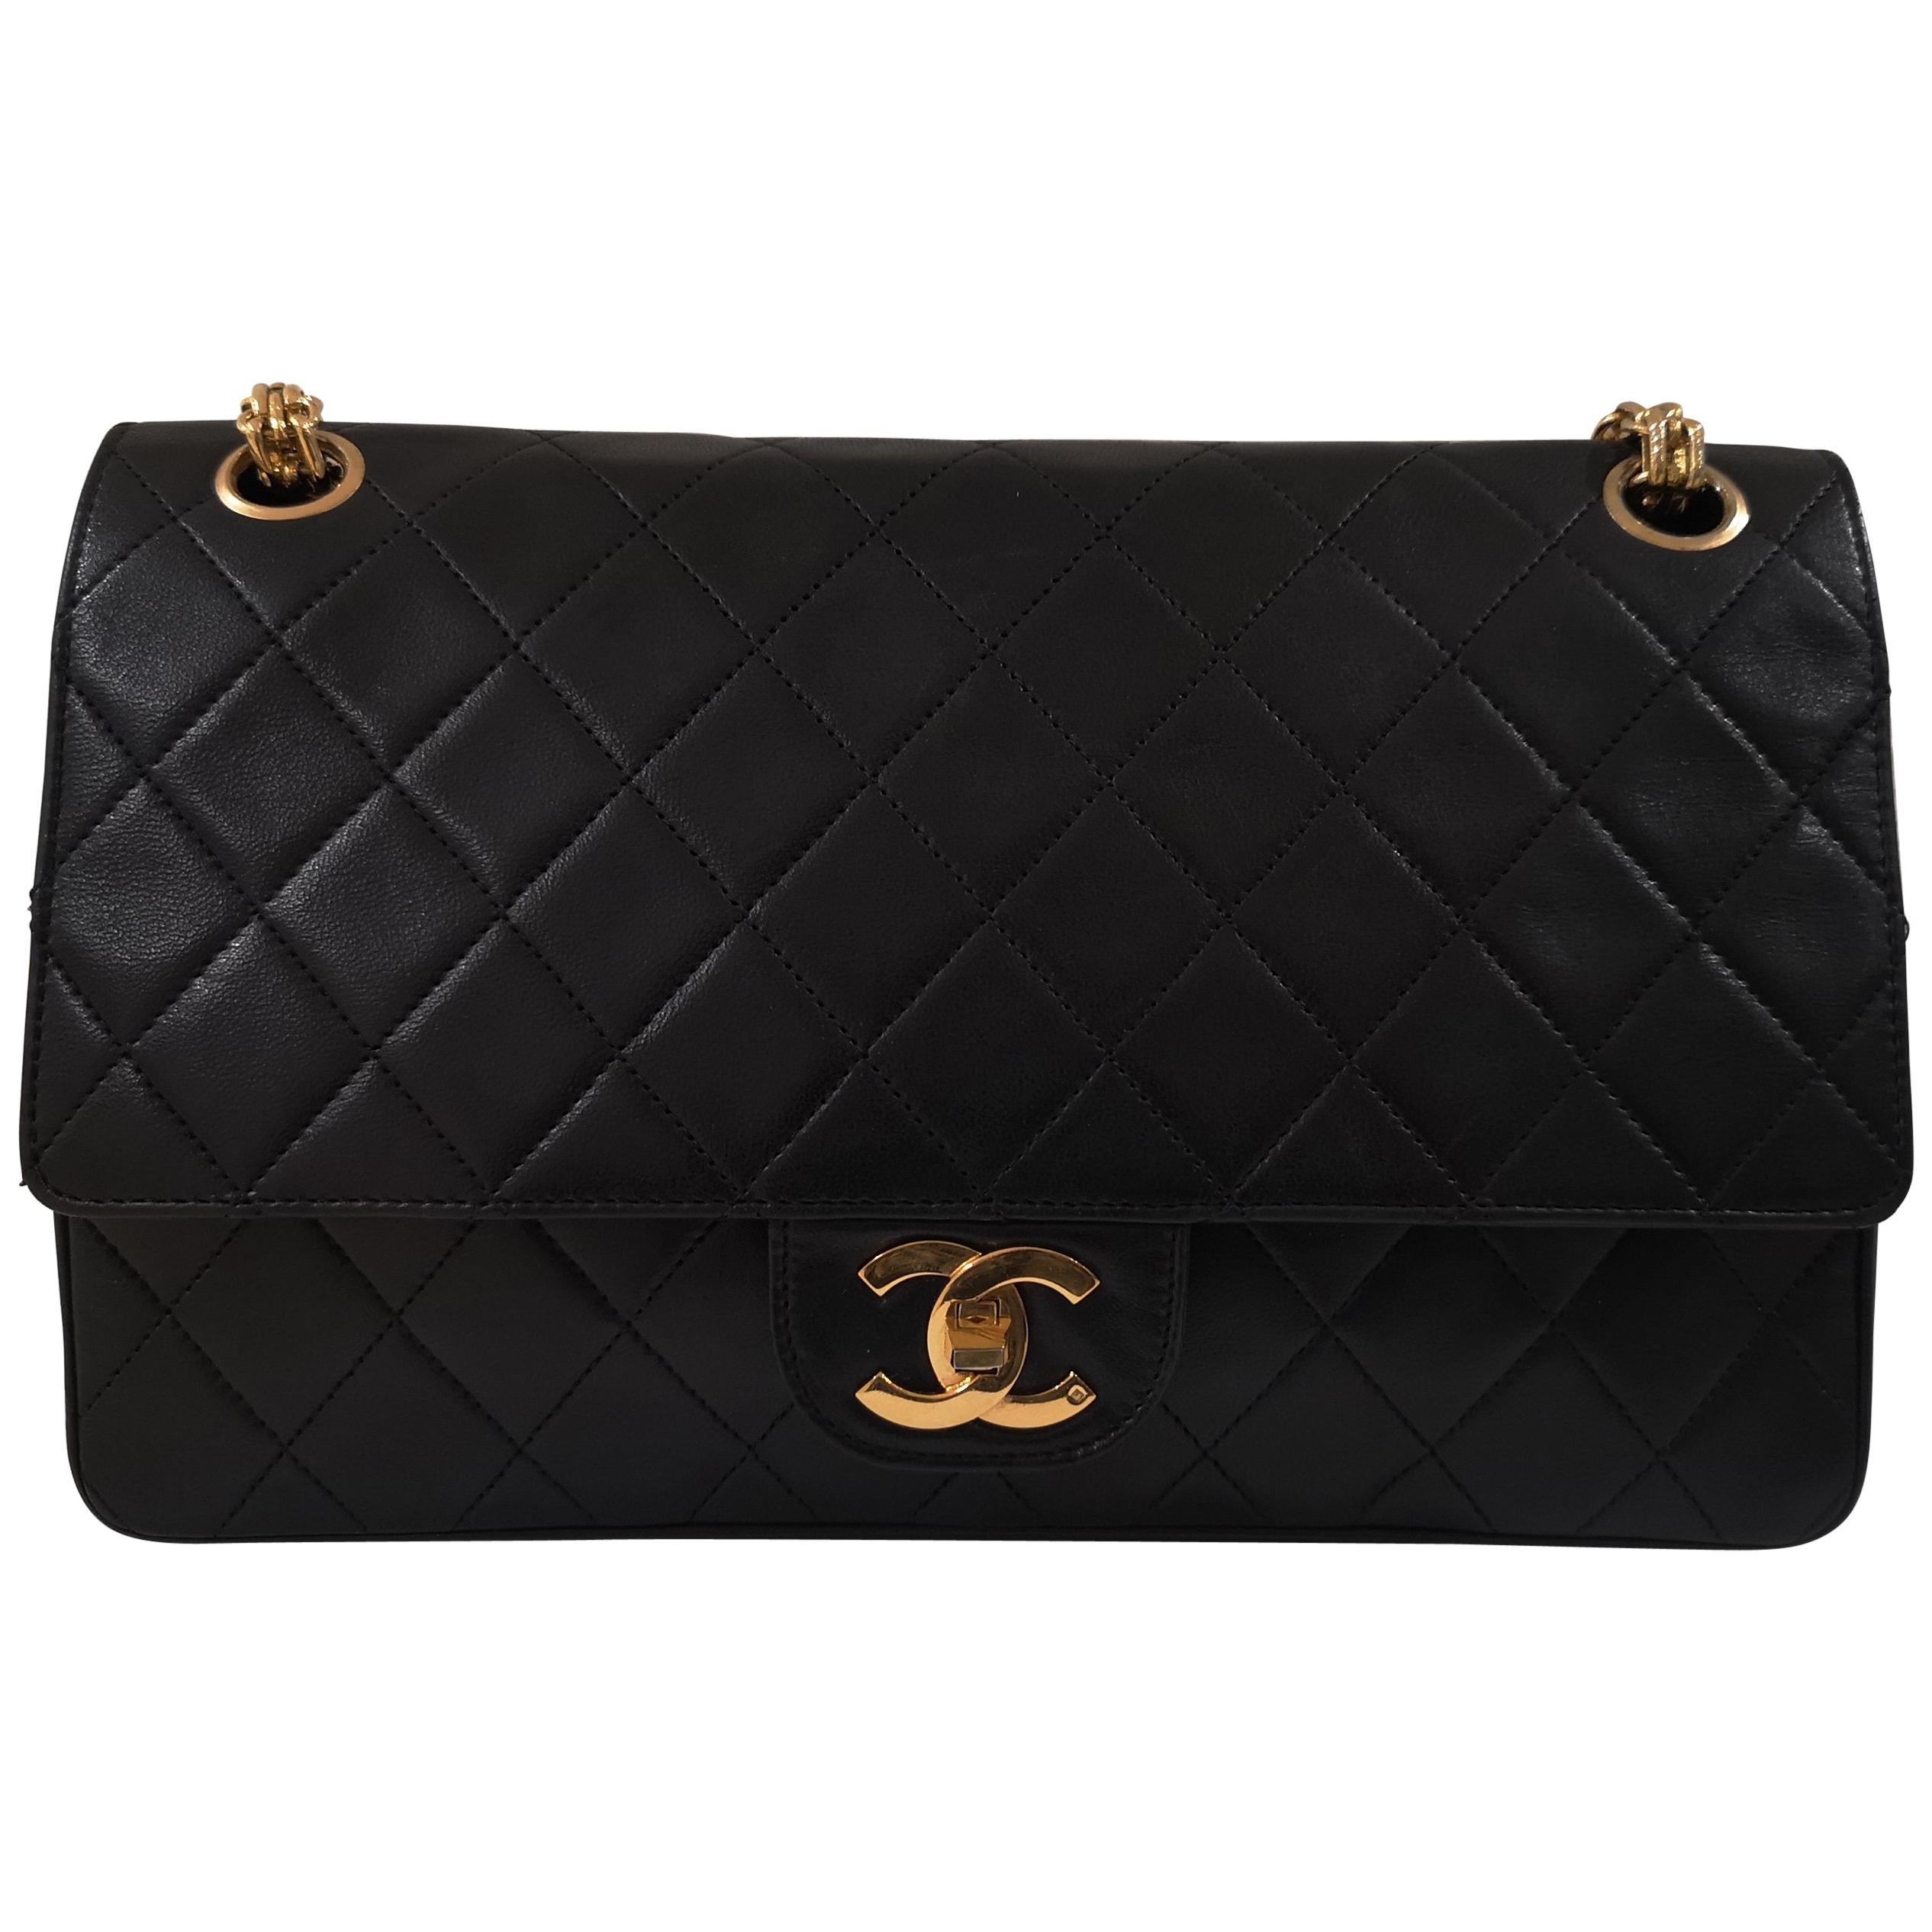 Chanel 2.55 Black Leather Shoulder Bag